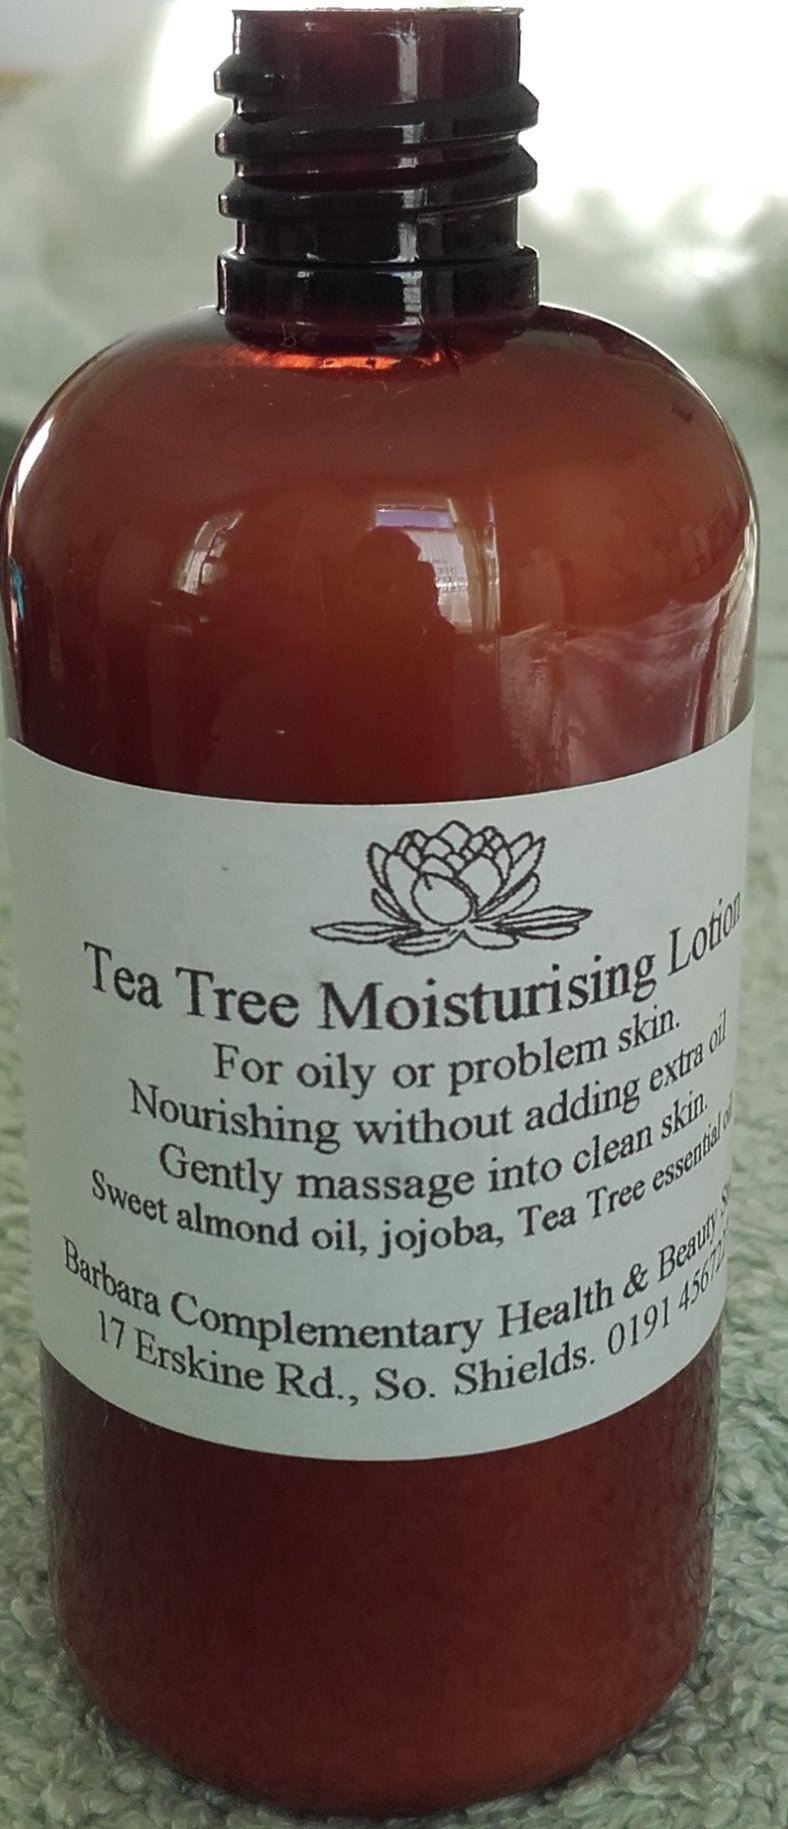 Tea Tree Moisturising Lotion